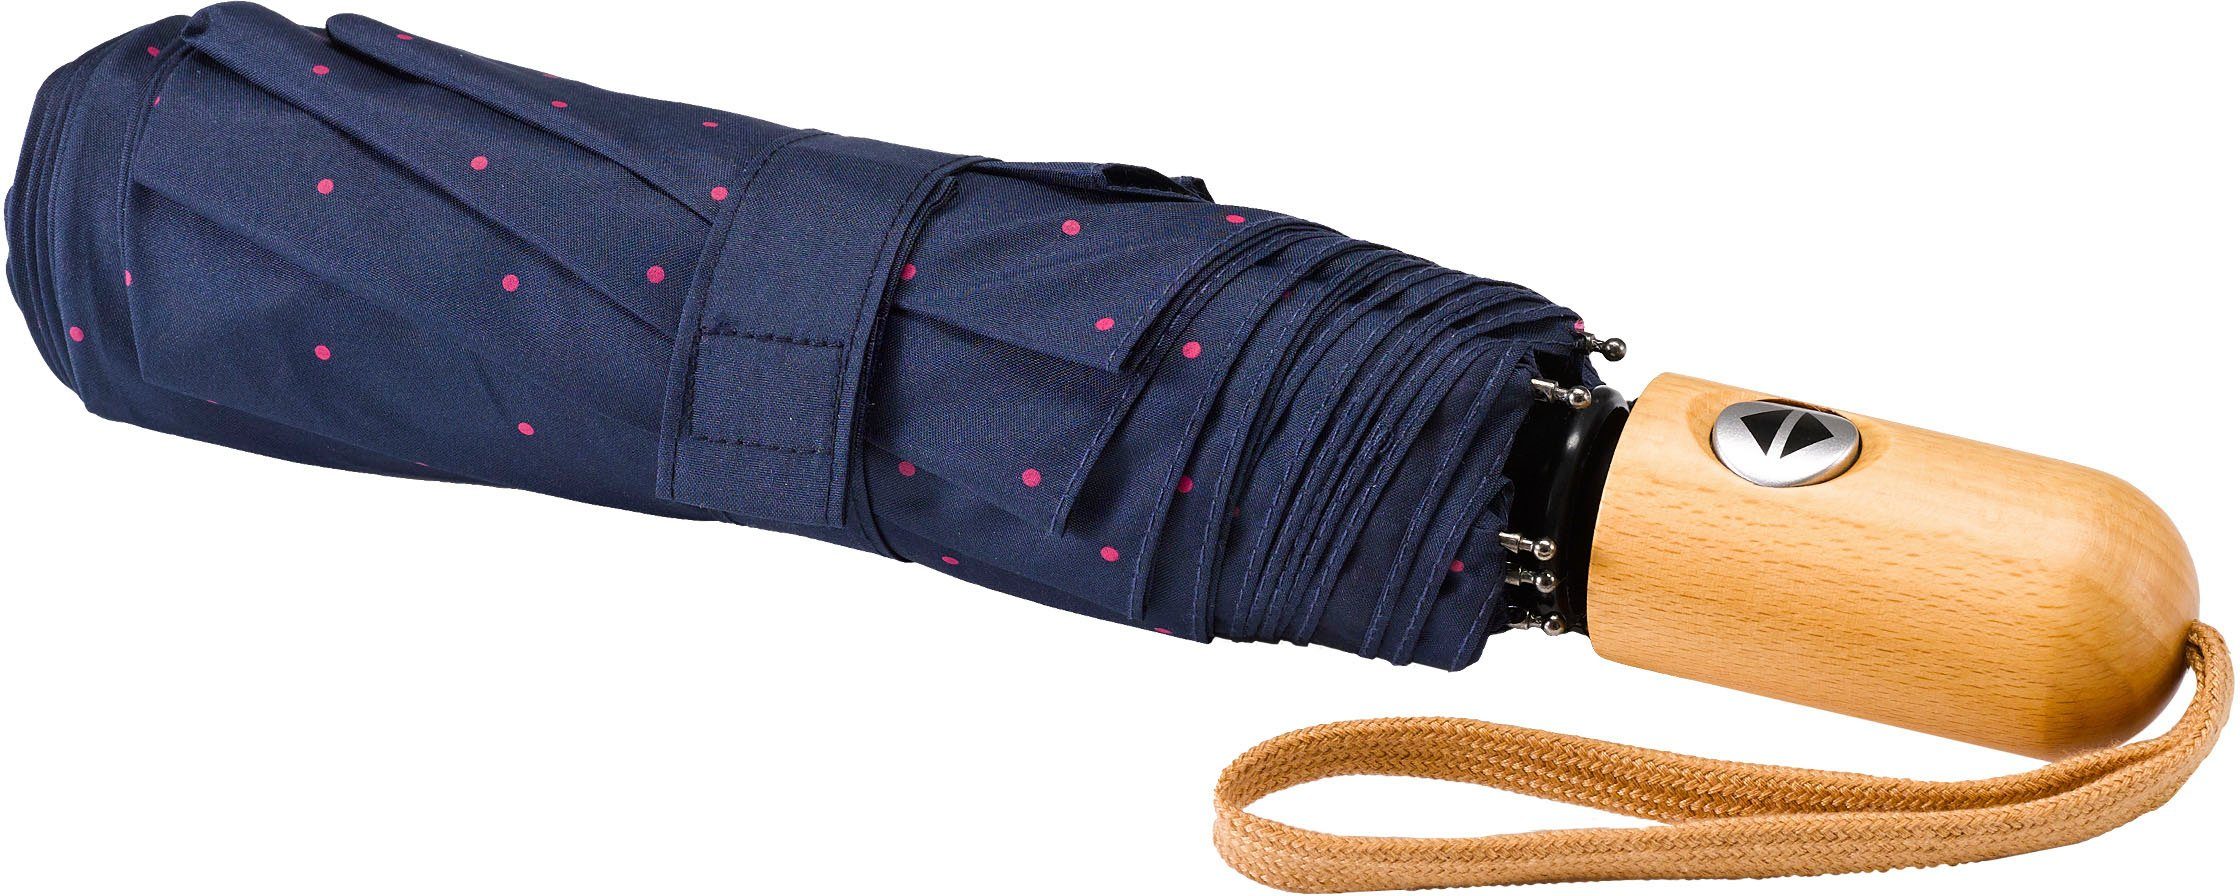 Umwelt-Taschenschirm, Taschenregenschirm EuroSCHIRM® marine, Punkte pink